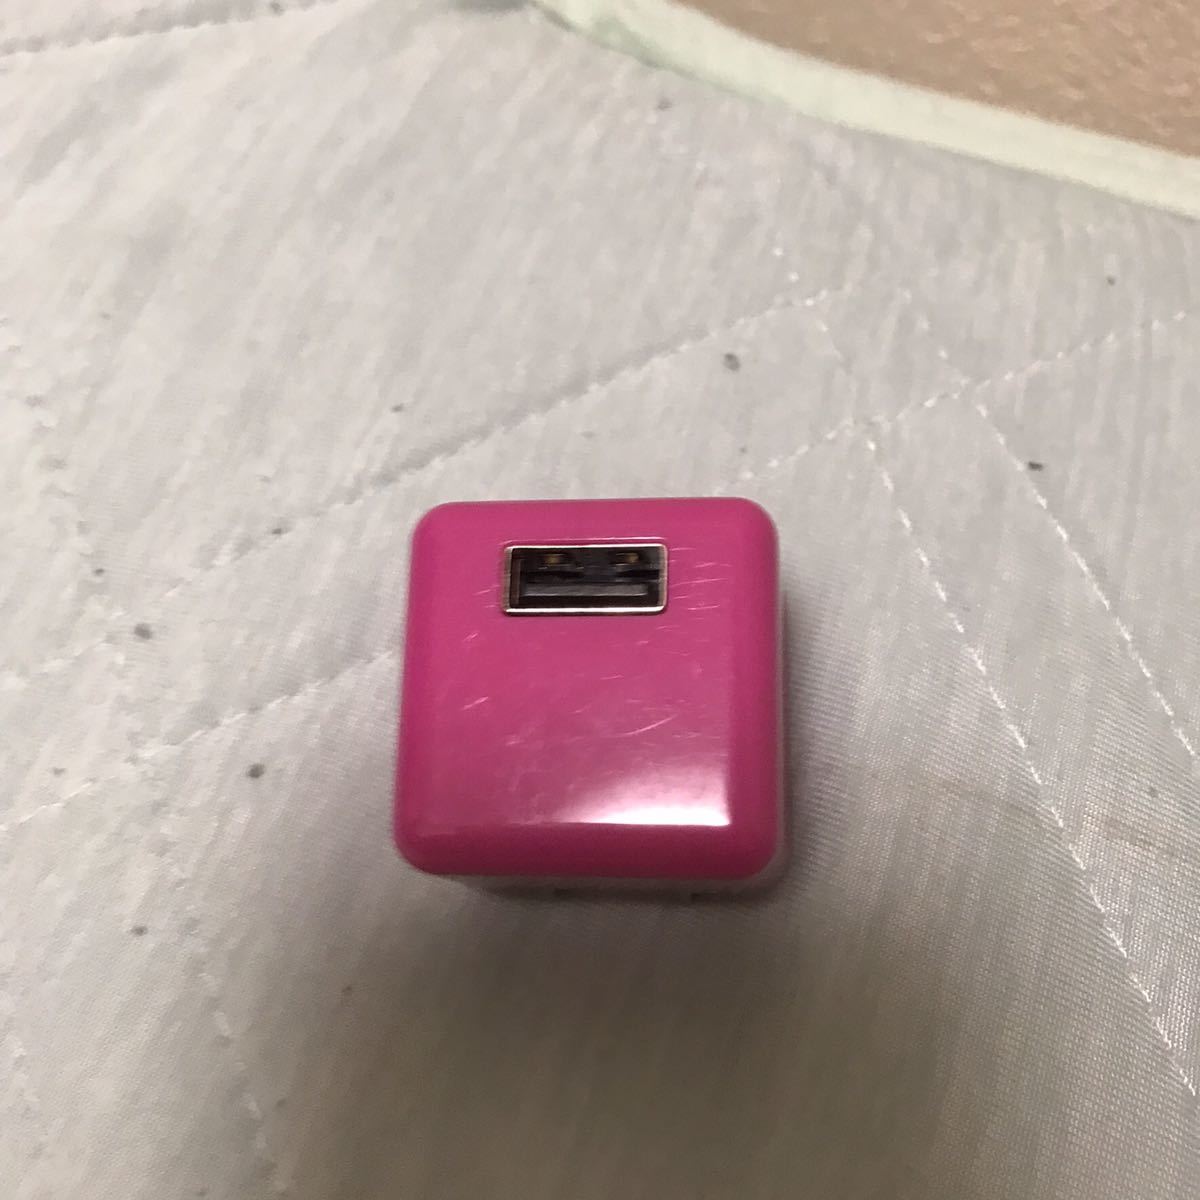 USB адаптер USB зарядка usb кабель iphone android обе стороны соответствует AC адаптер [ адаптер только ][ рабочее состояние подтверждено ] розовый 